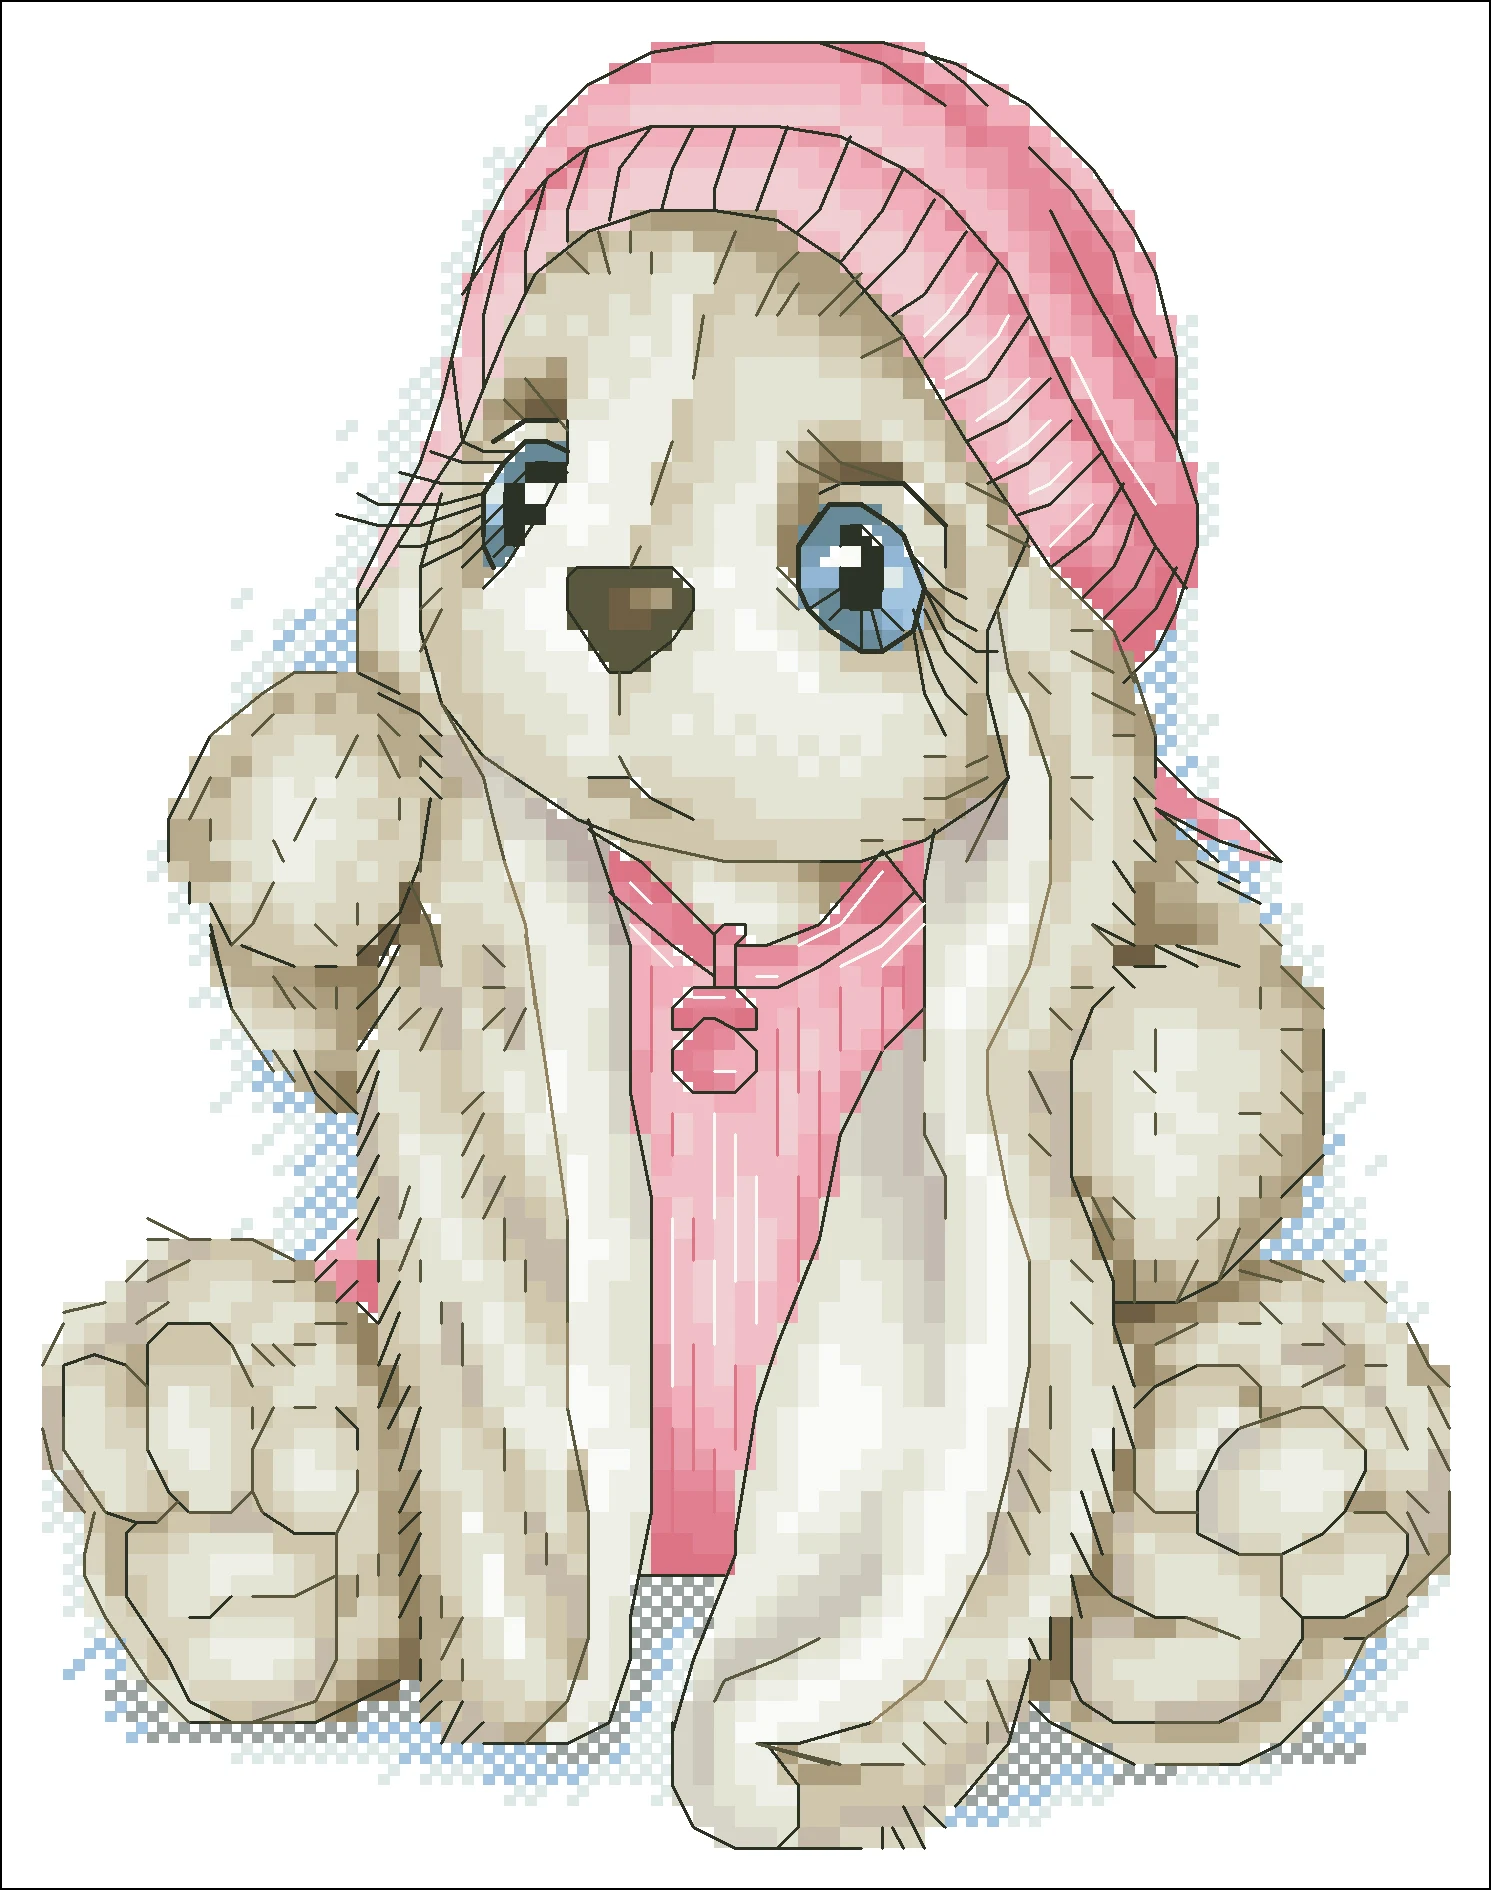 Oneroom кролик носить шерстяную шапочку Вышивка крестом посылка мультфильм 18ct 14ct 11ct ткань хлопок нить вышивка DIY ручной работы